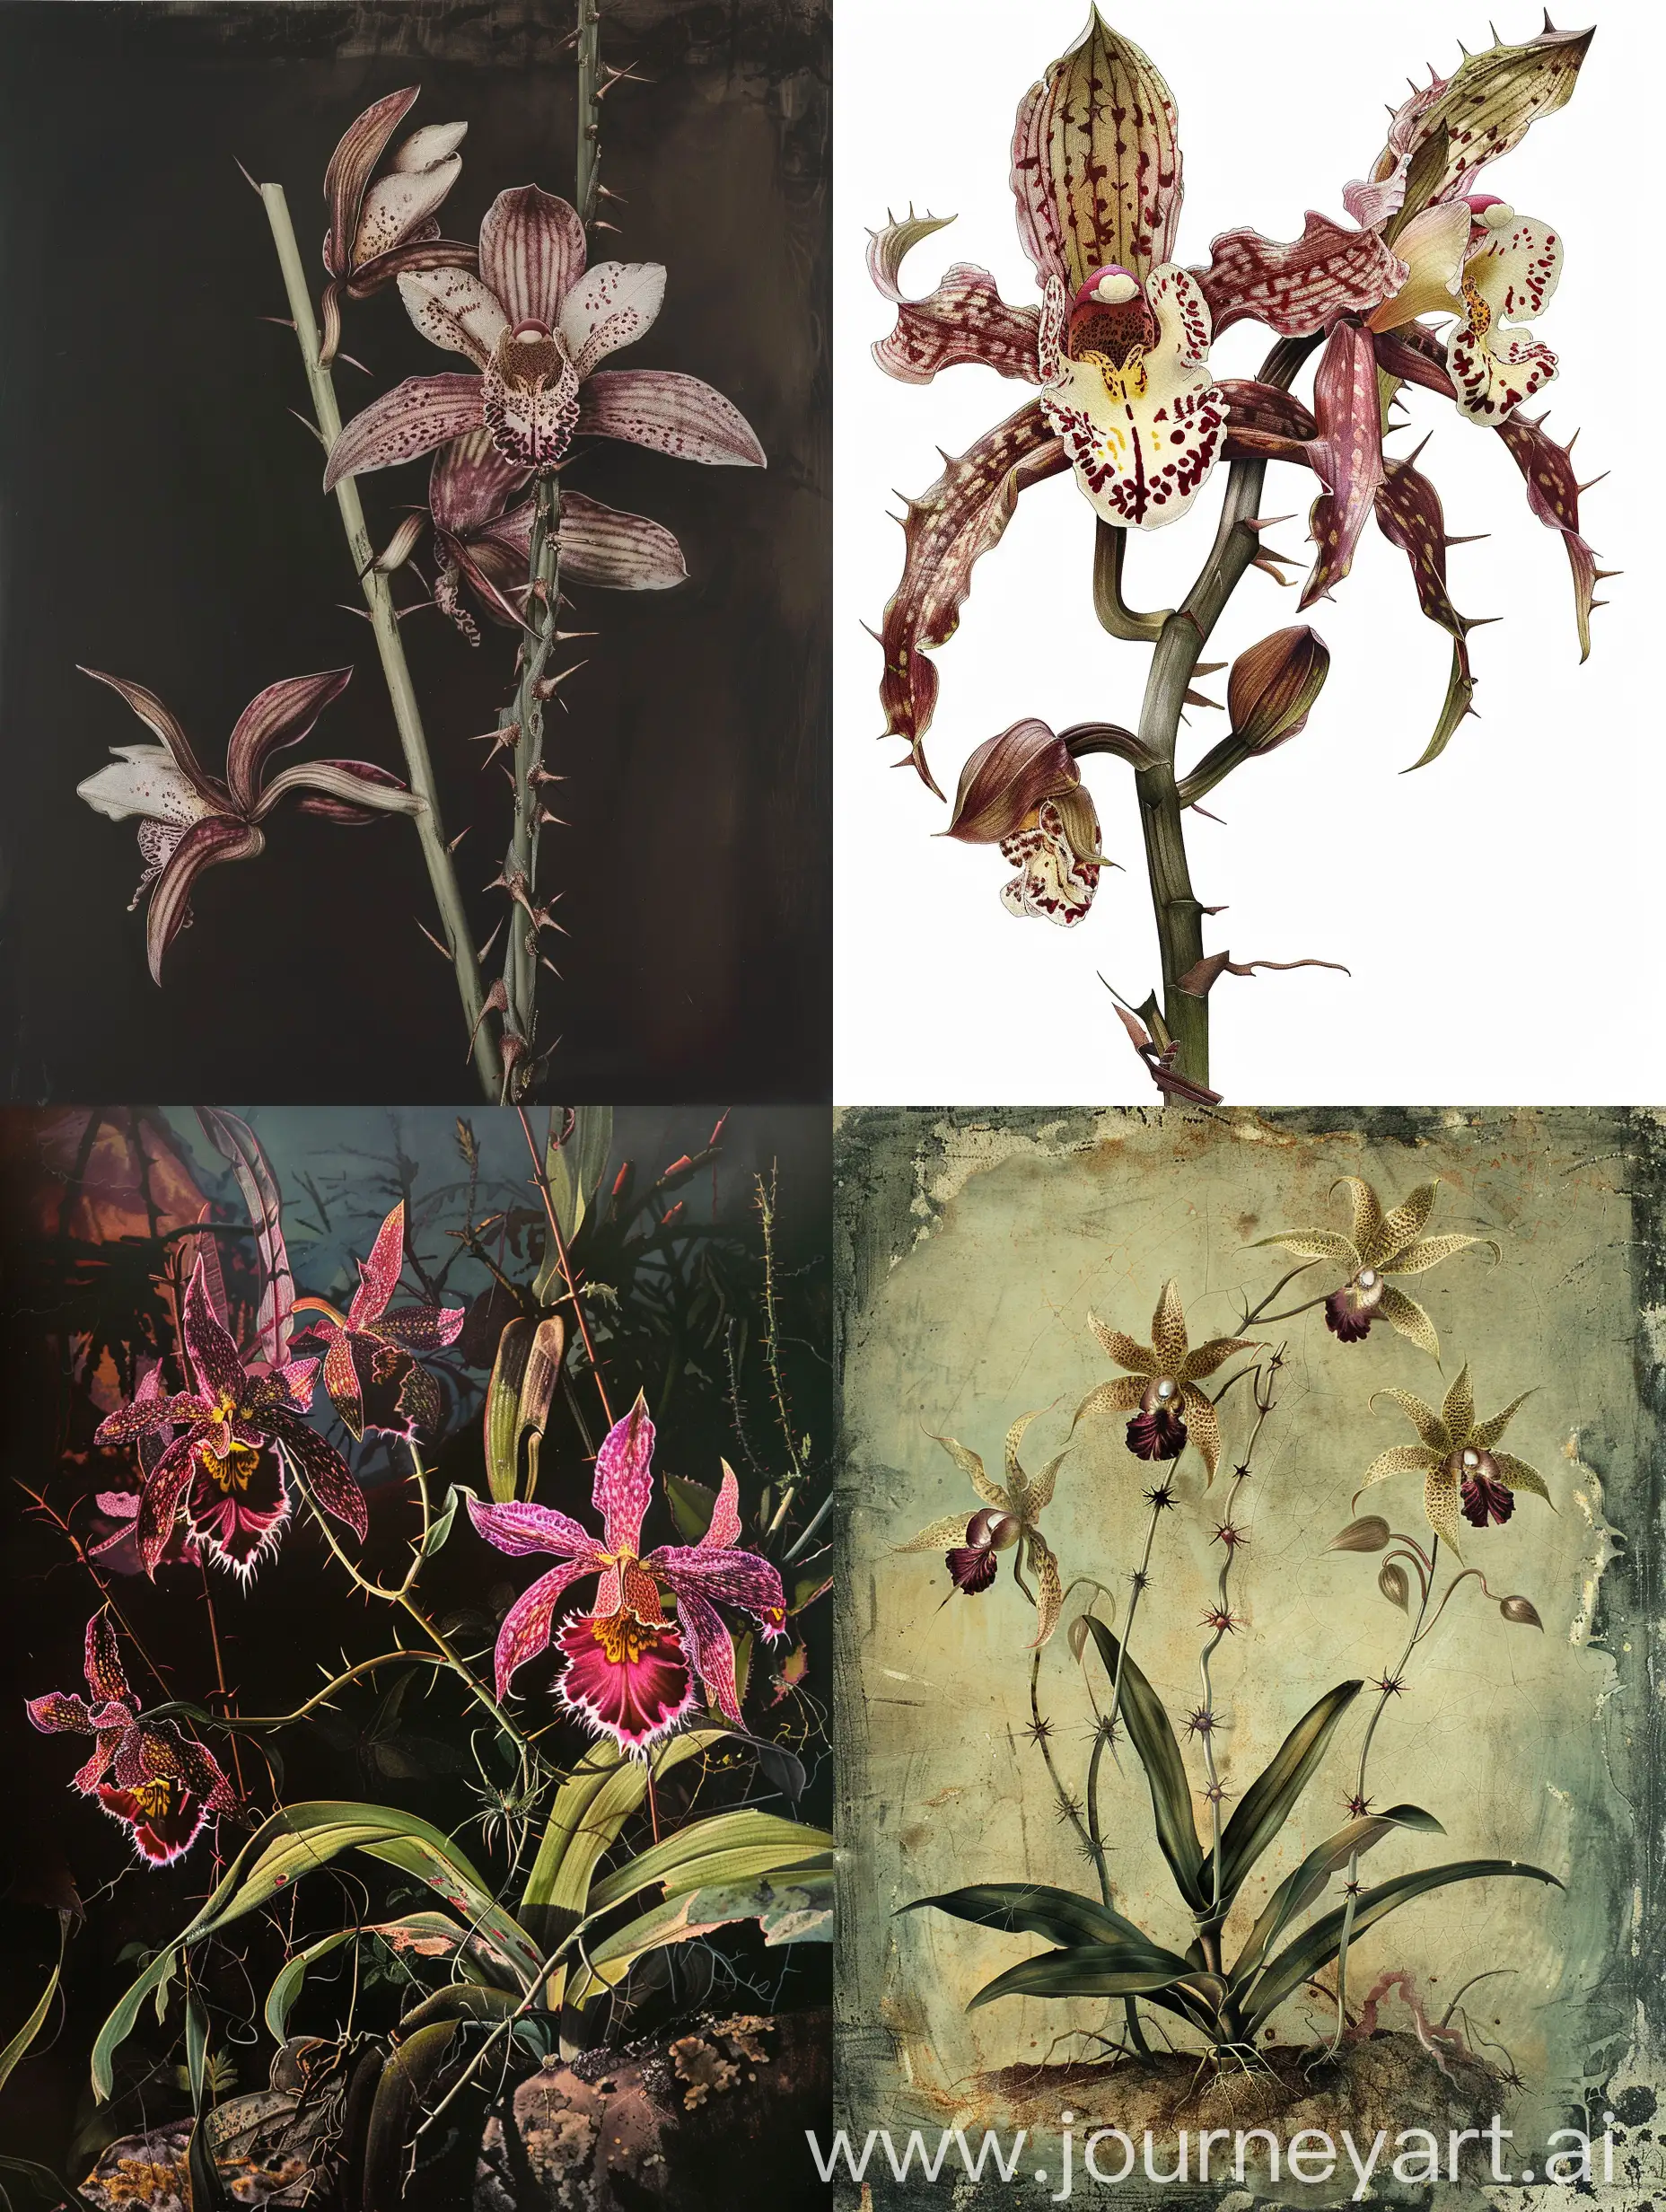 Изобрази дикие орхидеи, ядовитые орхидеи, шипы на стеблях, атмосфера ужаса 